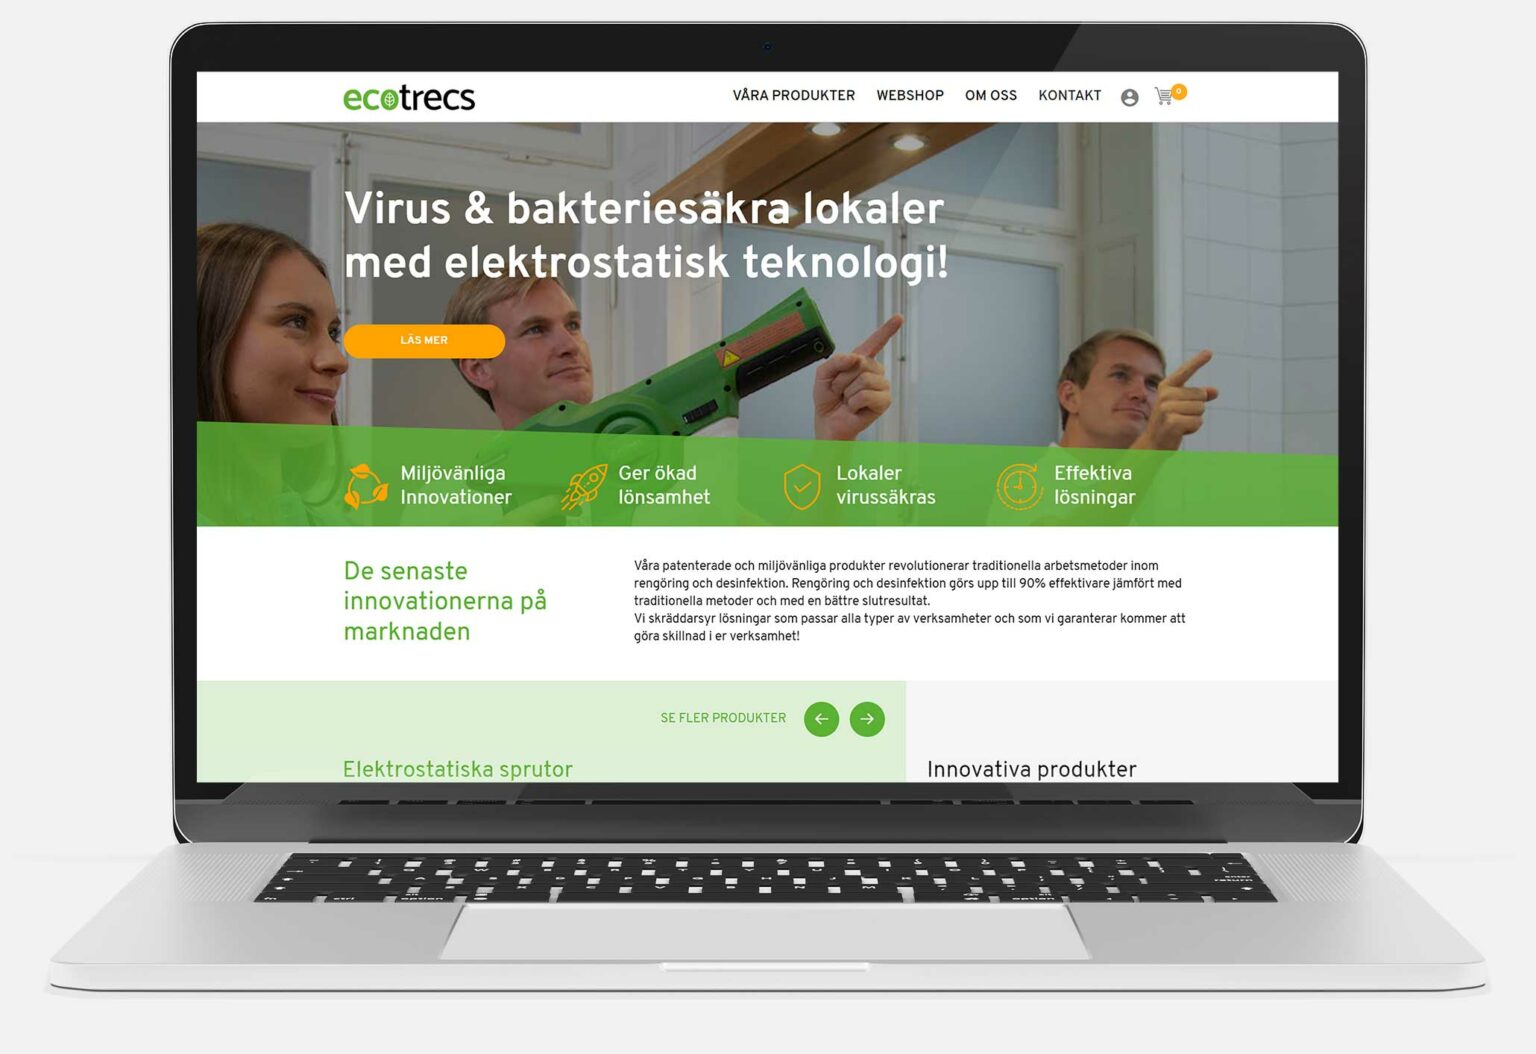 Ecotrecs webpage on a mac.